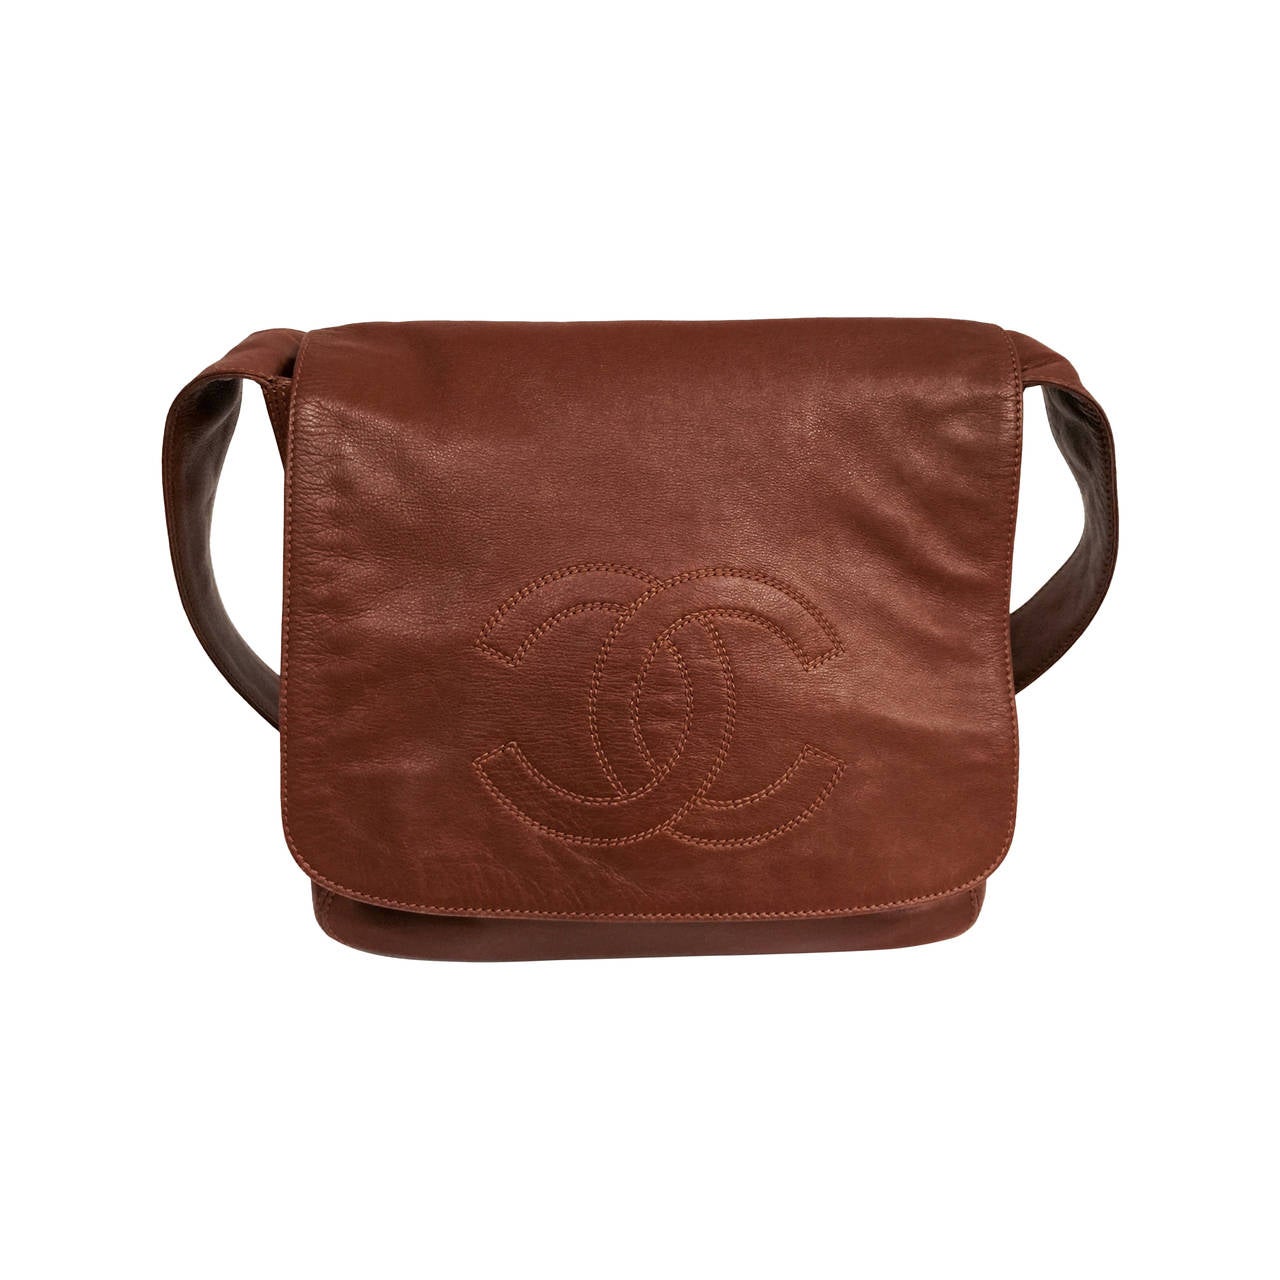 1990s Chanel Chestnut Brown Flap Shoulder Bag Serial Number 5302380